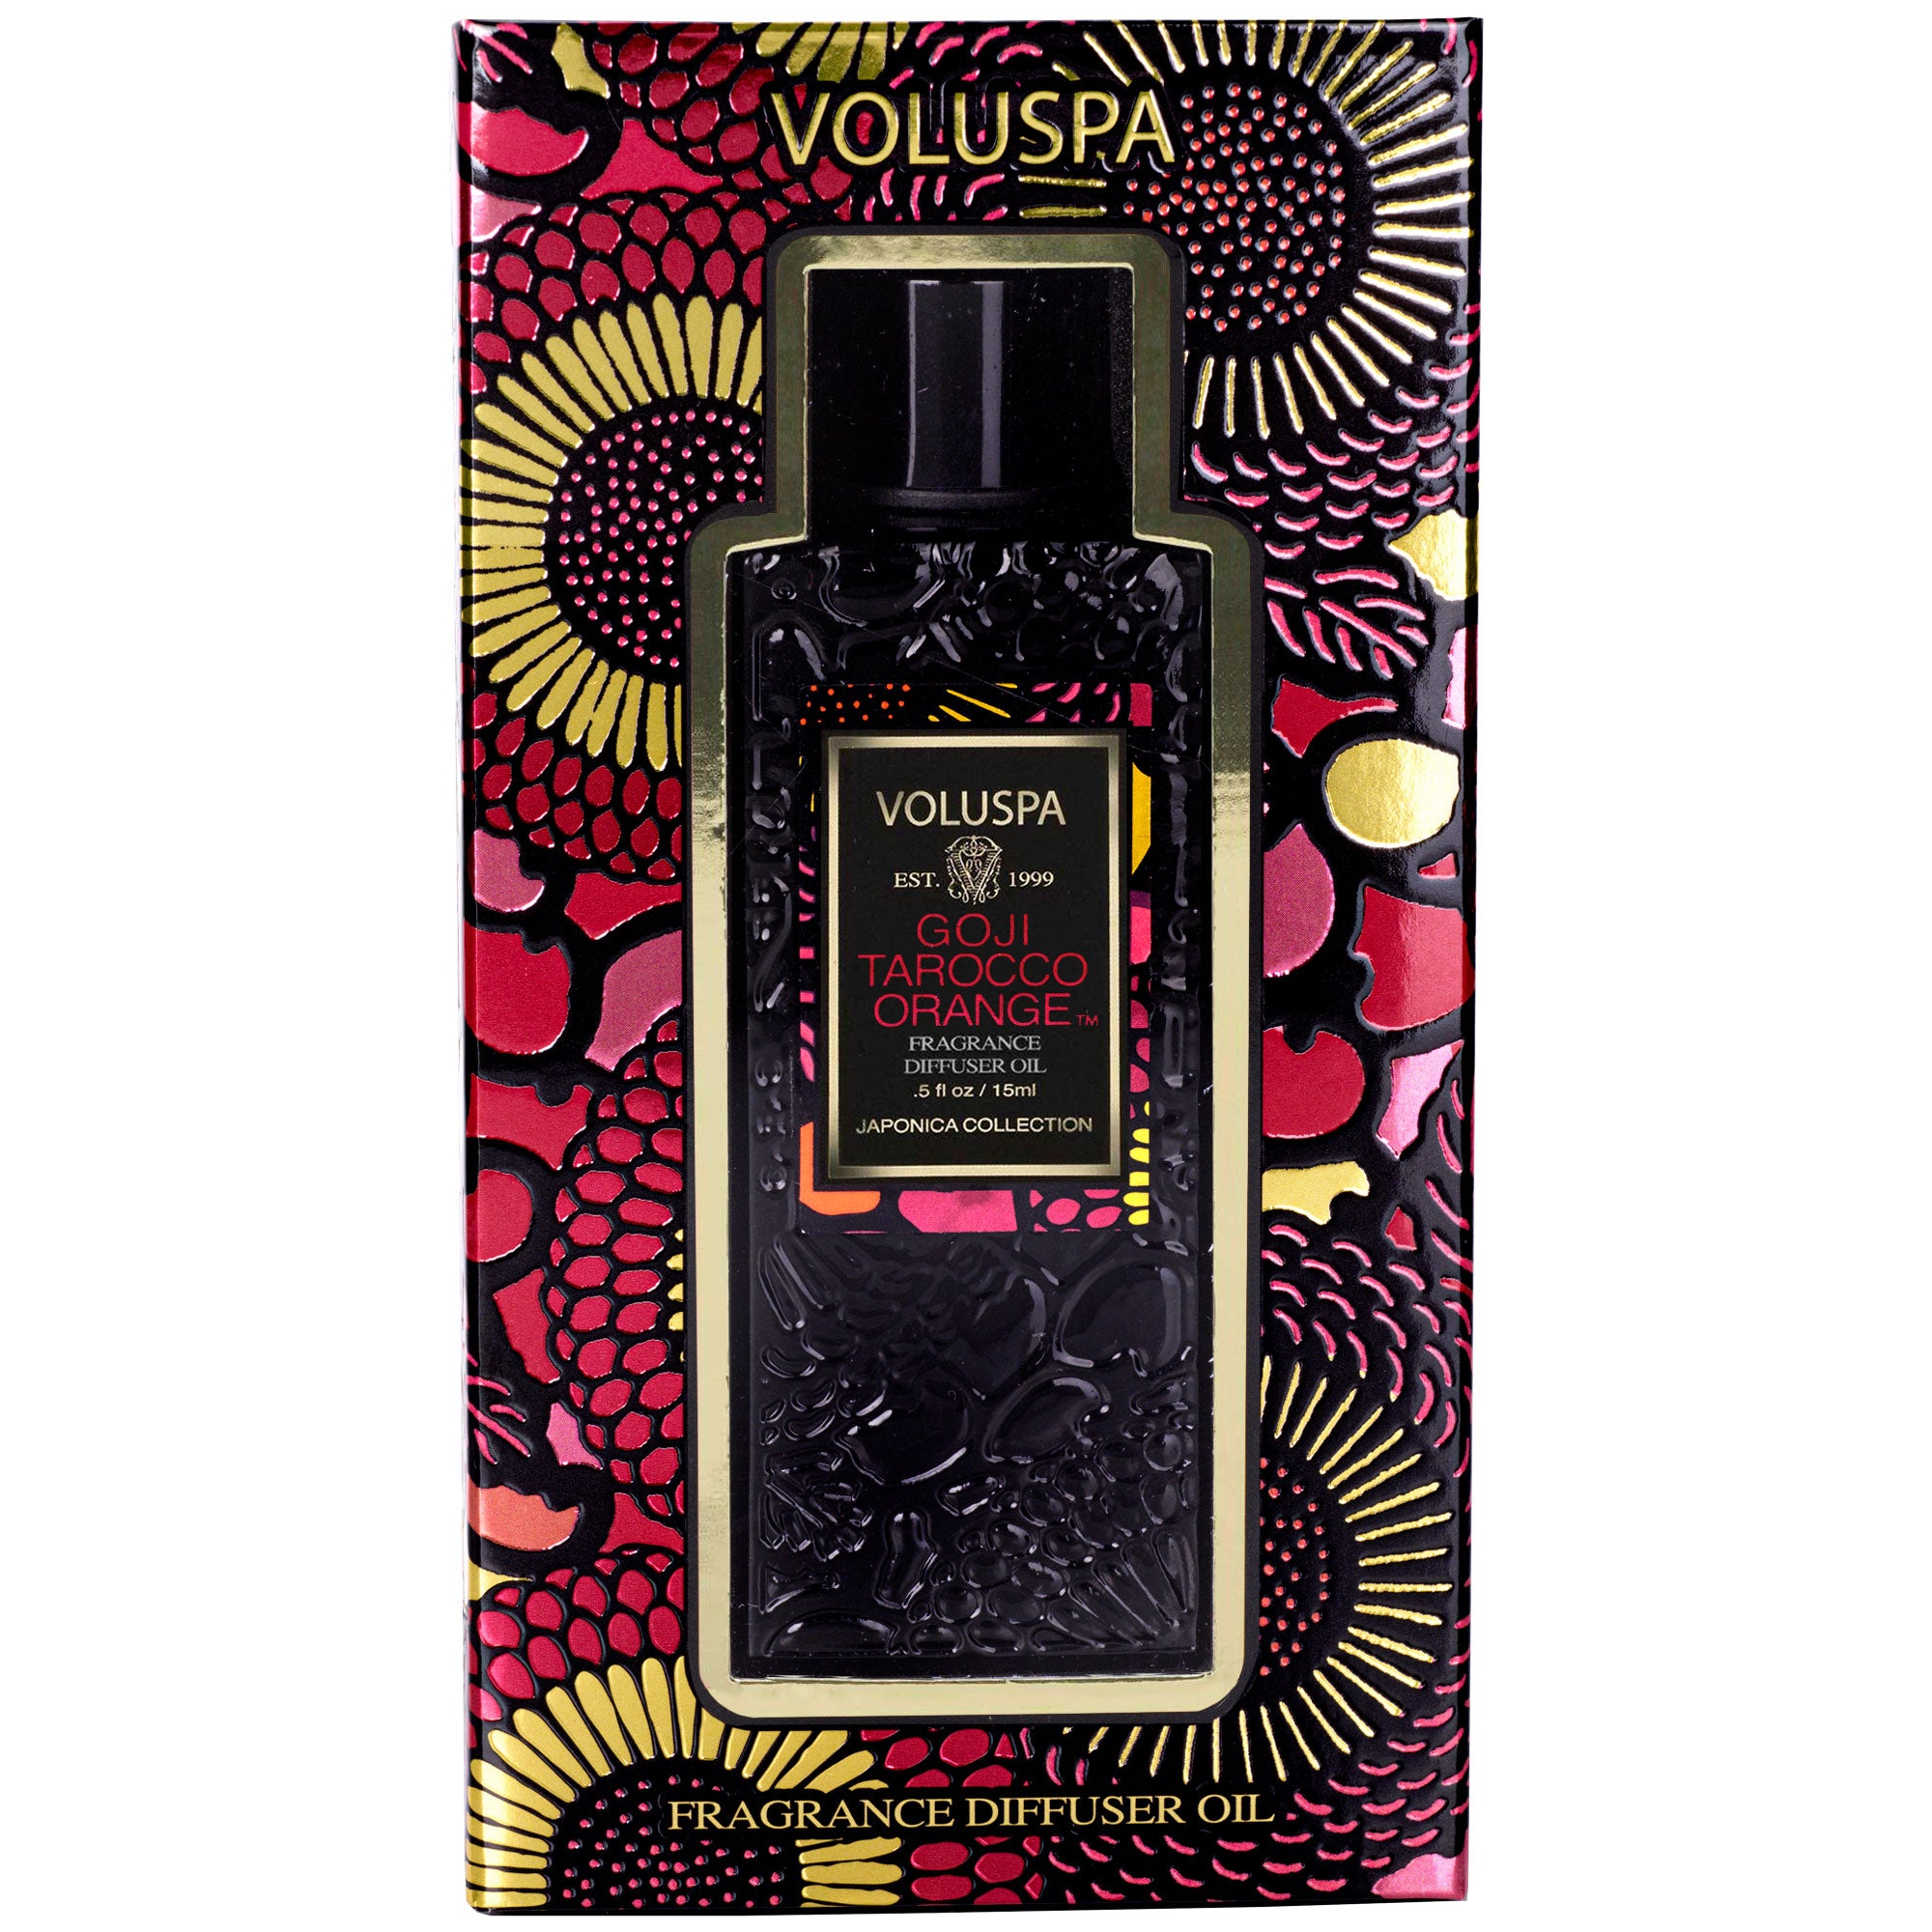 Voluspa Fragrance Oil Diffuser - Maude